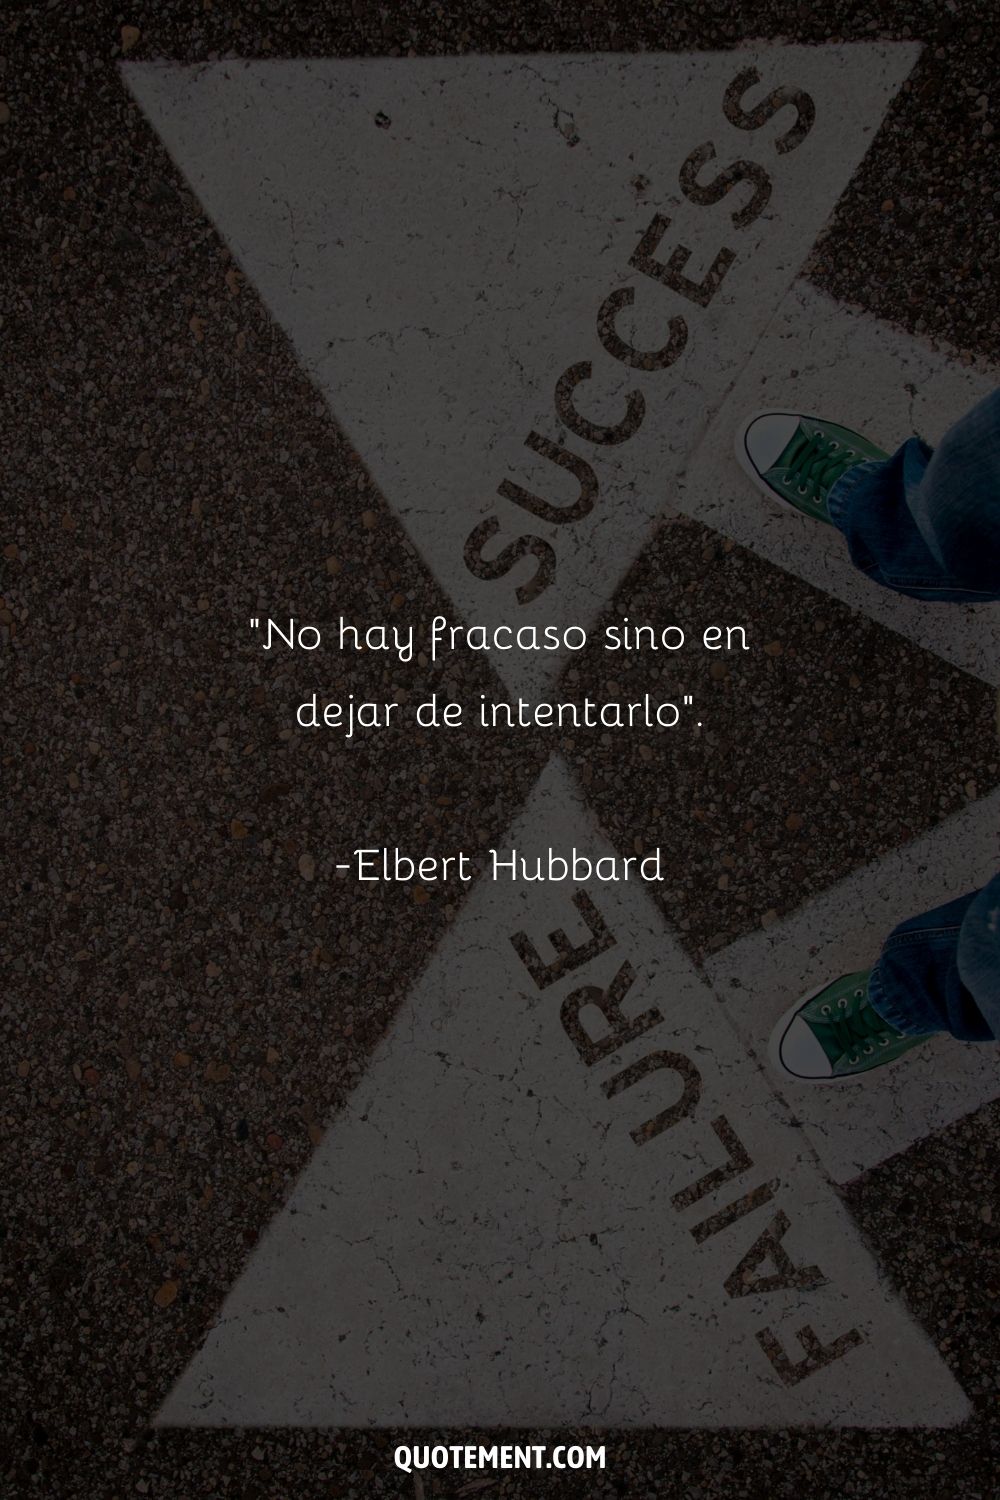 "No hay fracaso excepto en dejar de intentarlo". - Elbert Hubbard